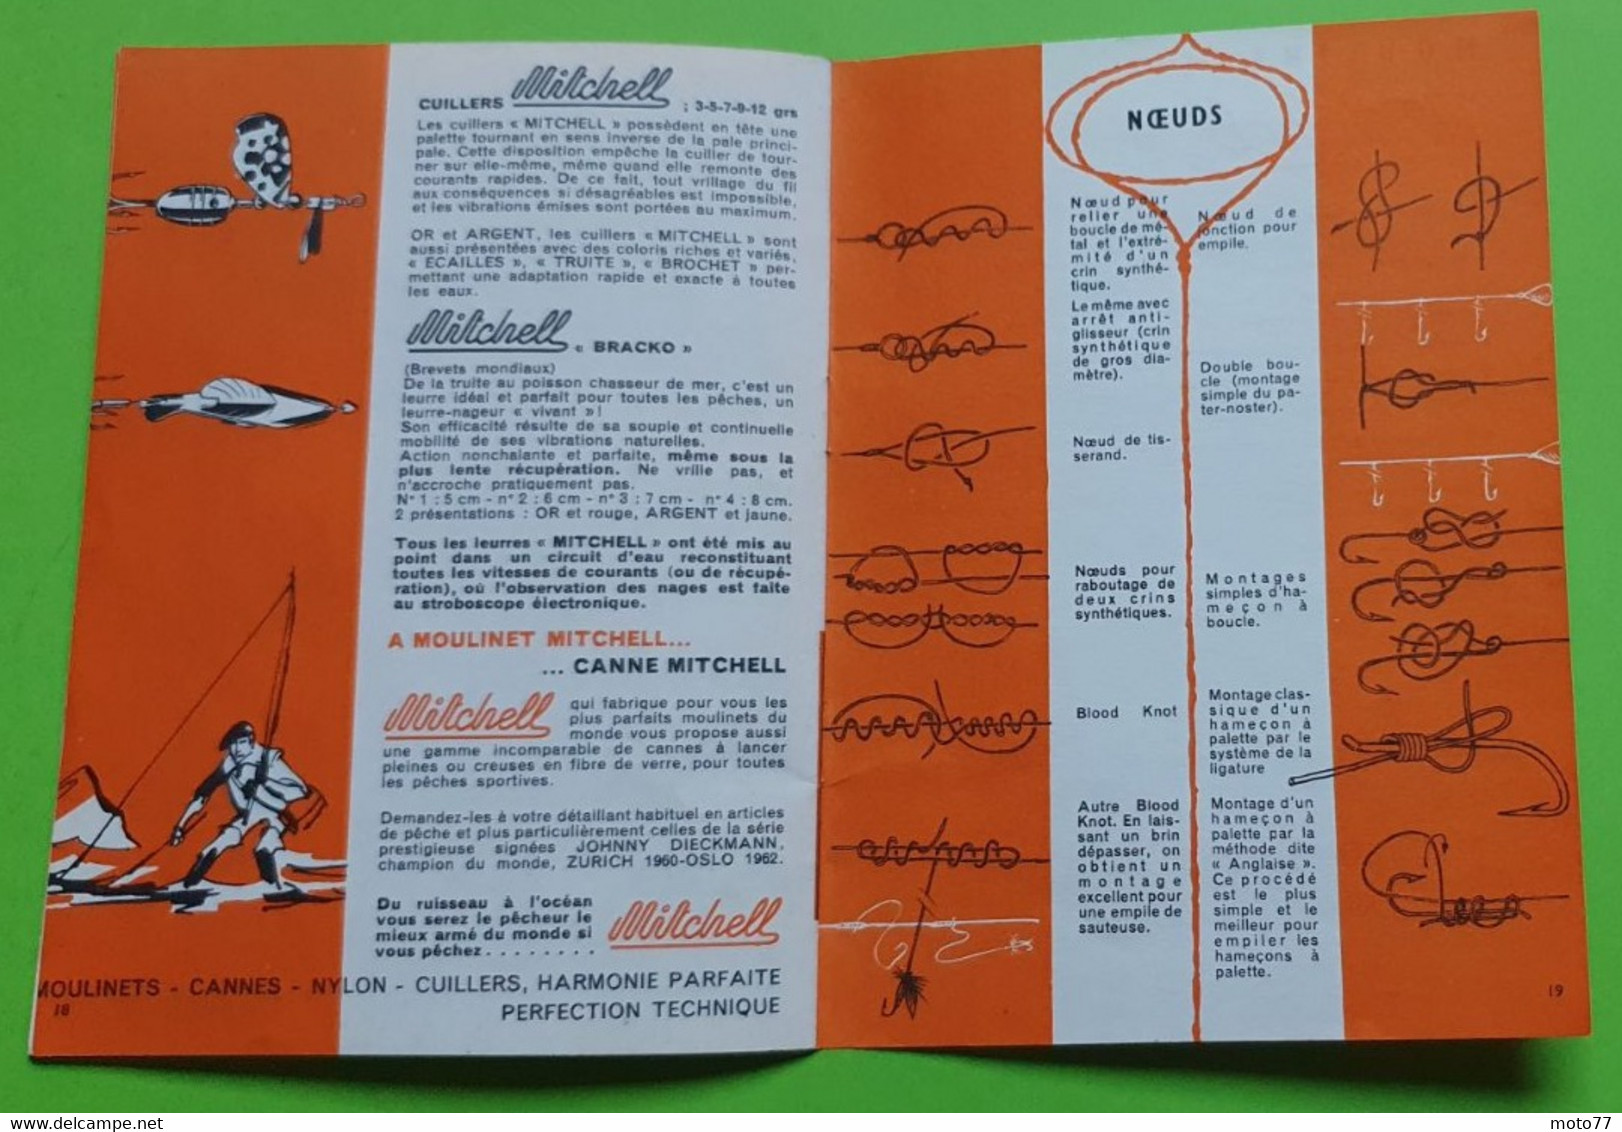 Ancien livret MITCHELL moulinet à PÊCHE - Poisson Techniques Nœuds - environ 11.5x15.5 cm fermé 20 pages - vers 1960